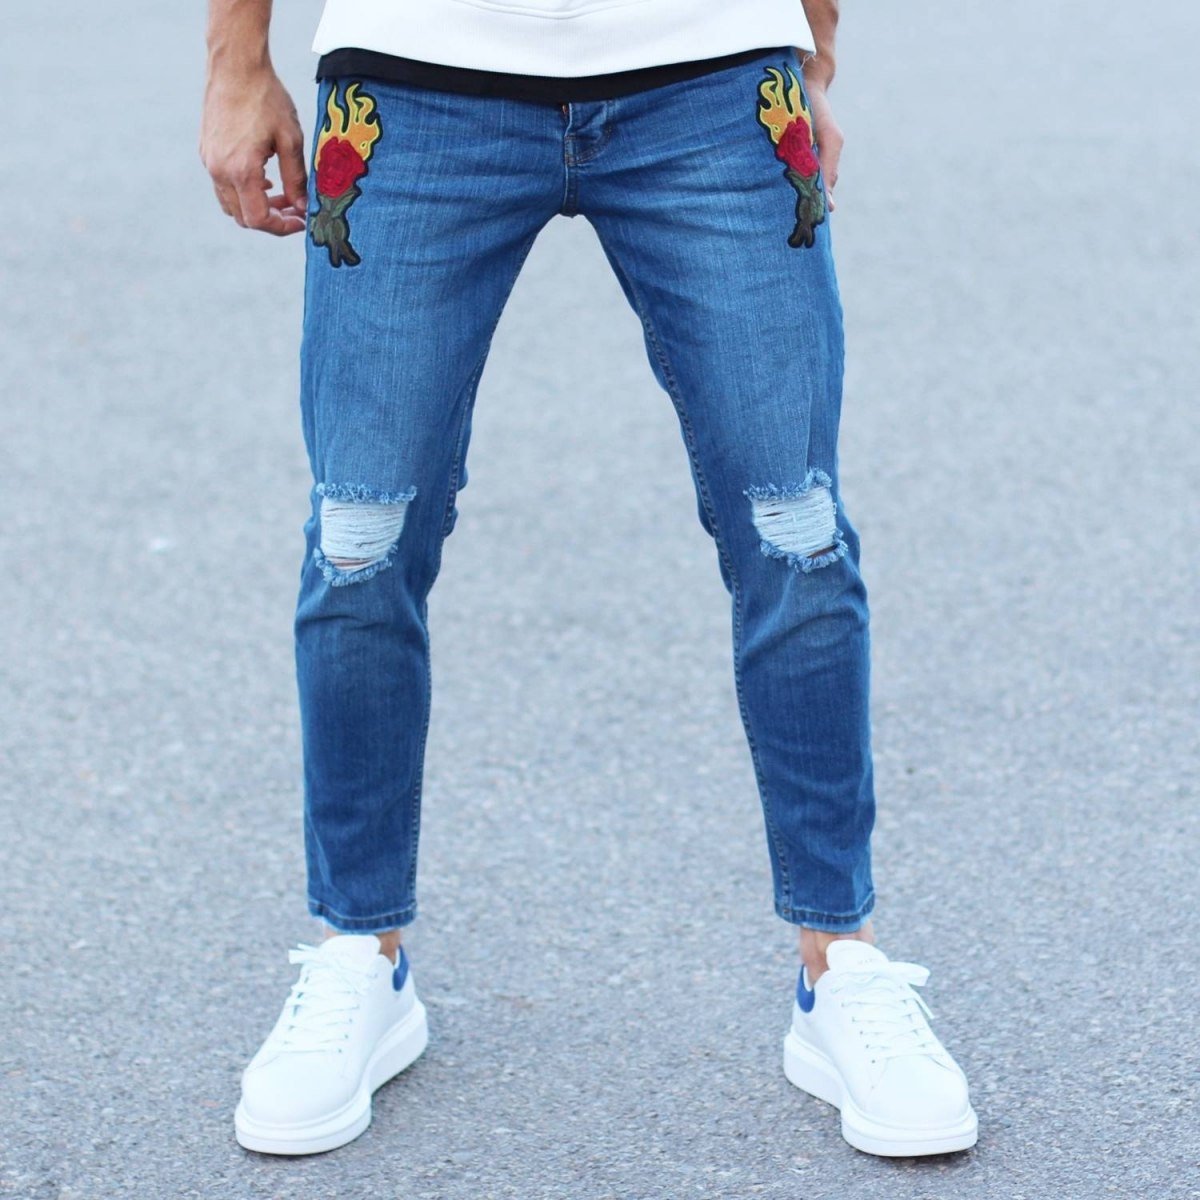 Herren Ripped Jeans mit Rosen Flickwerk in dunkelblau - 1